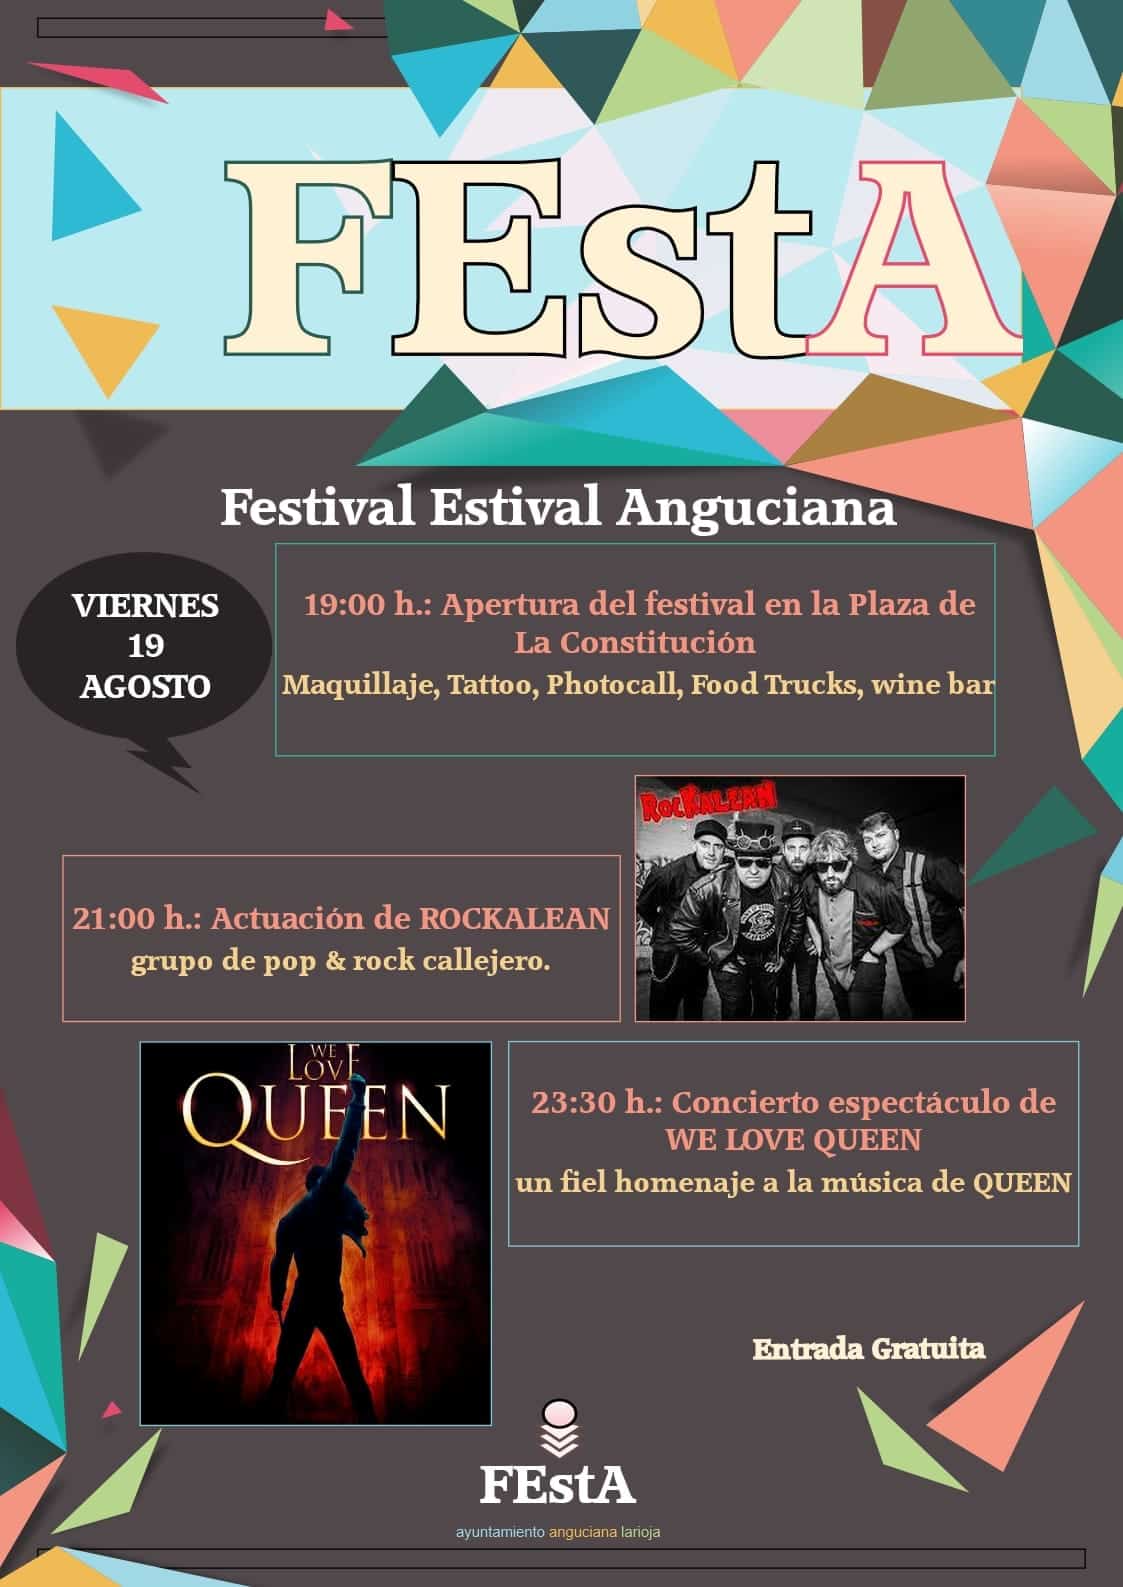 Anguciana rescata su Festival Estival con un nuevo formato y entrada gratuita 1